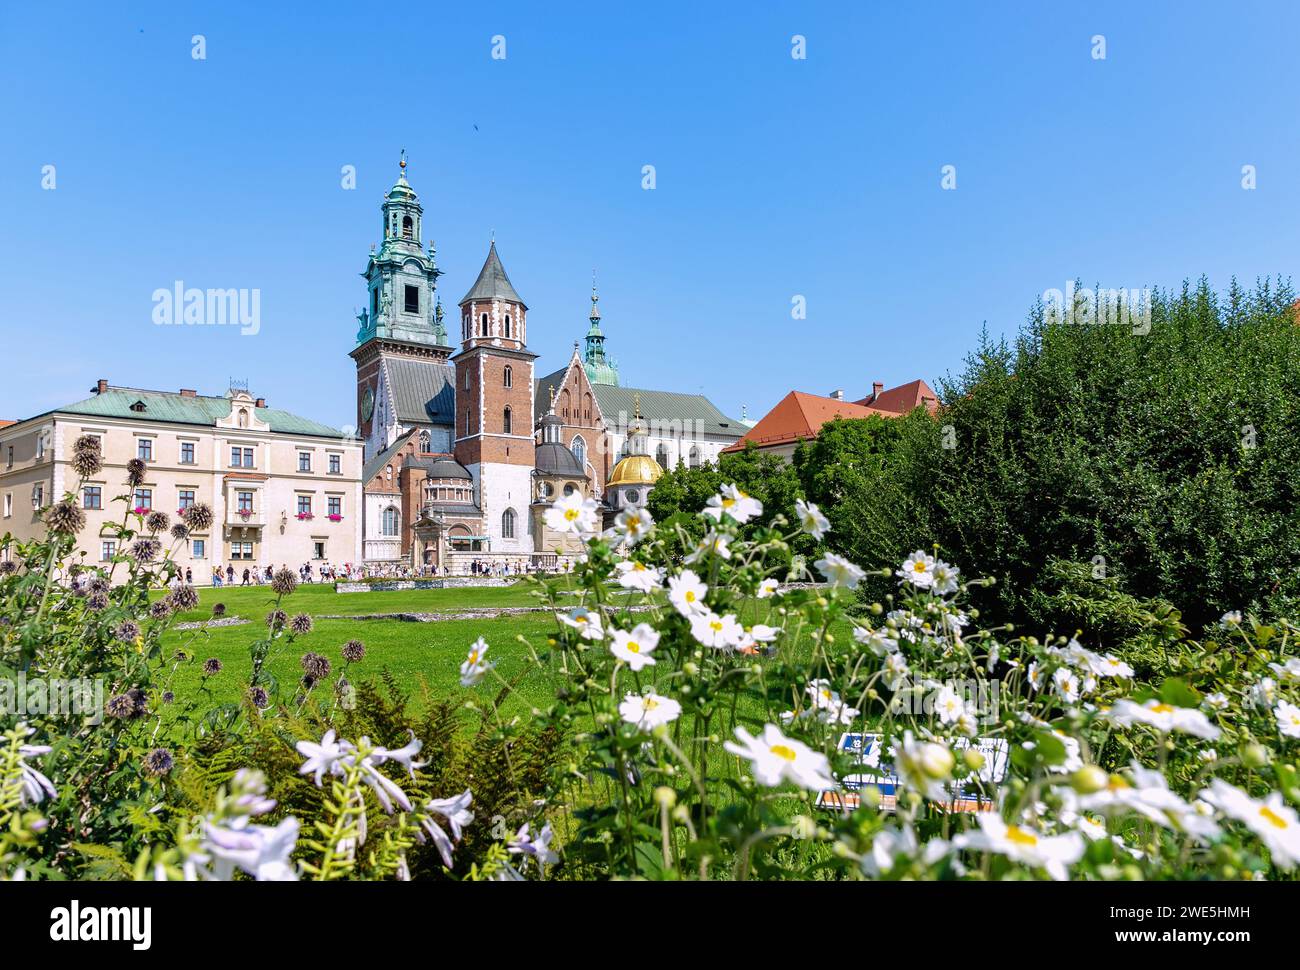 Wawel Plateau (Wzgórze Wawelskie) with cathedral and Sigismund&#39;s Chapel (Kaplica Zygmuntowska) in the old town of Kraków in Poland Stock Photo